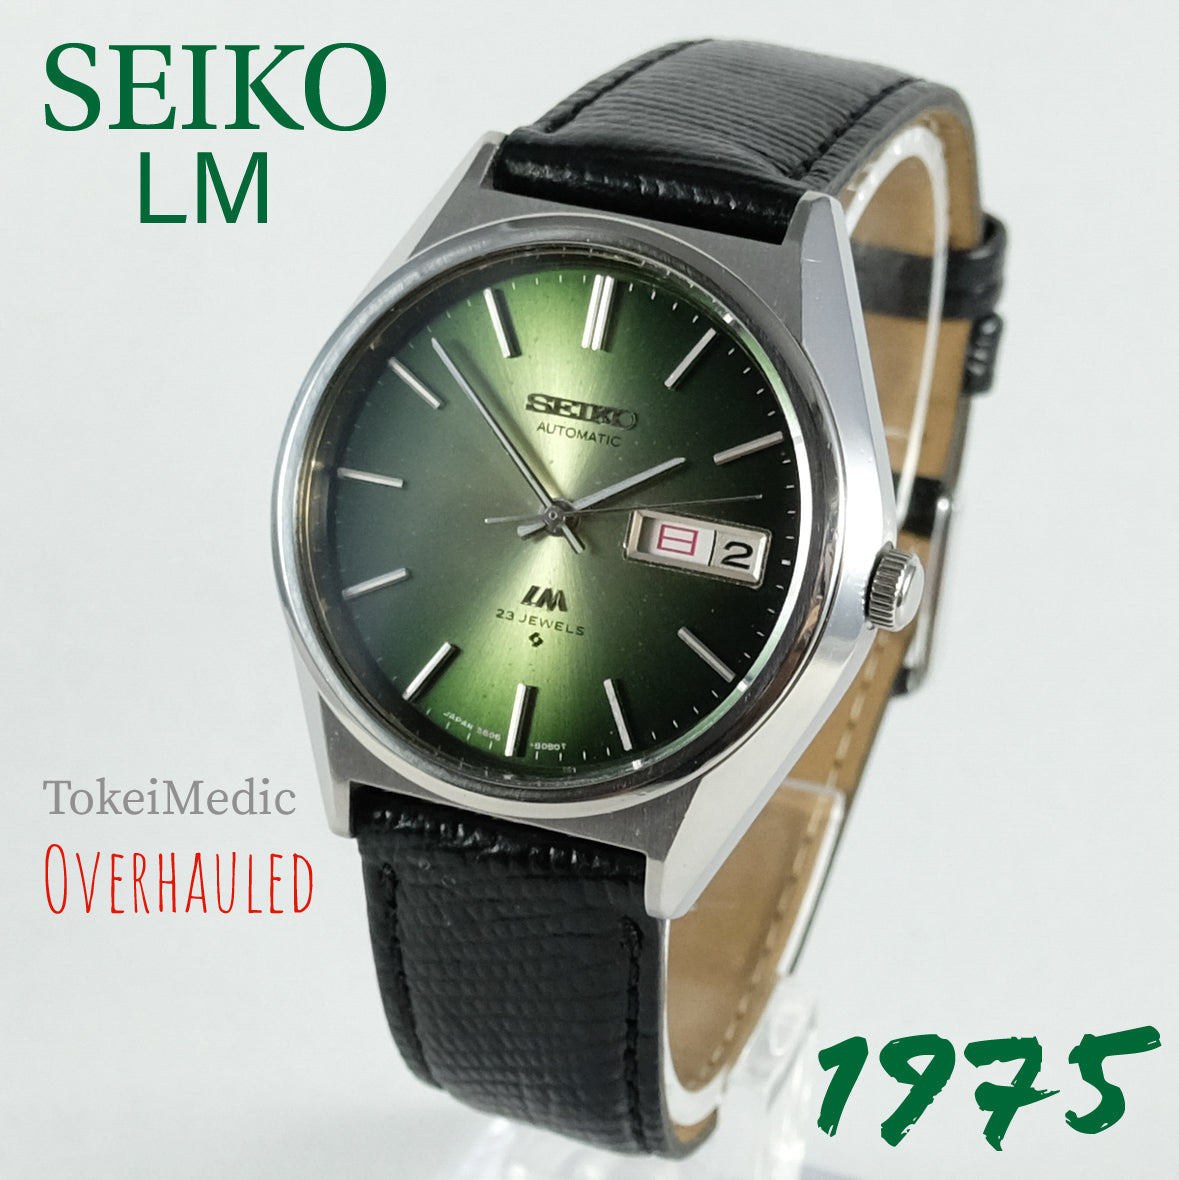 1975 Seiko LM – TokeiMedic